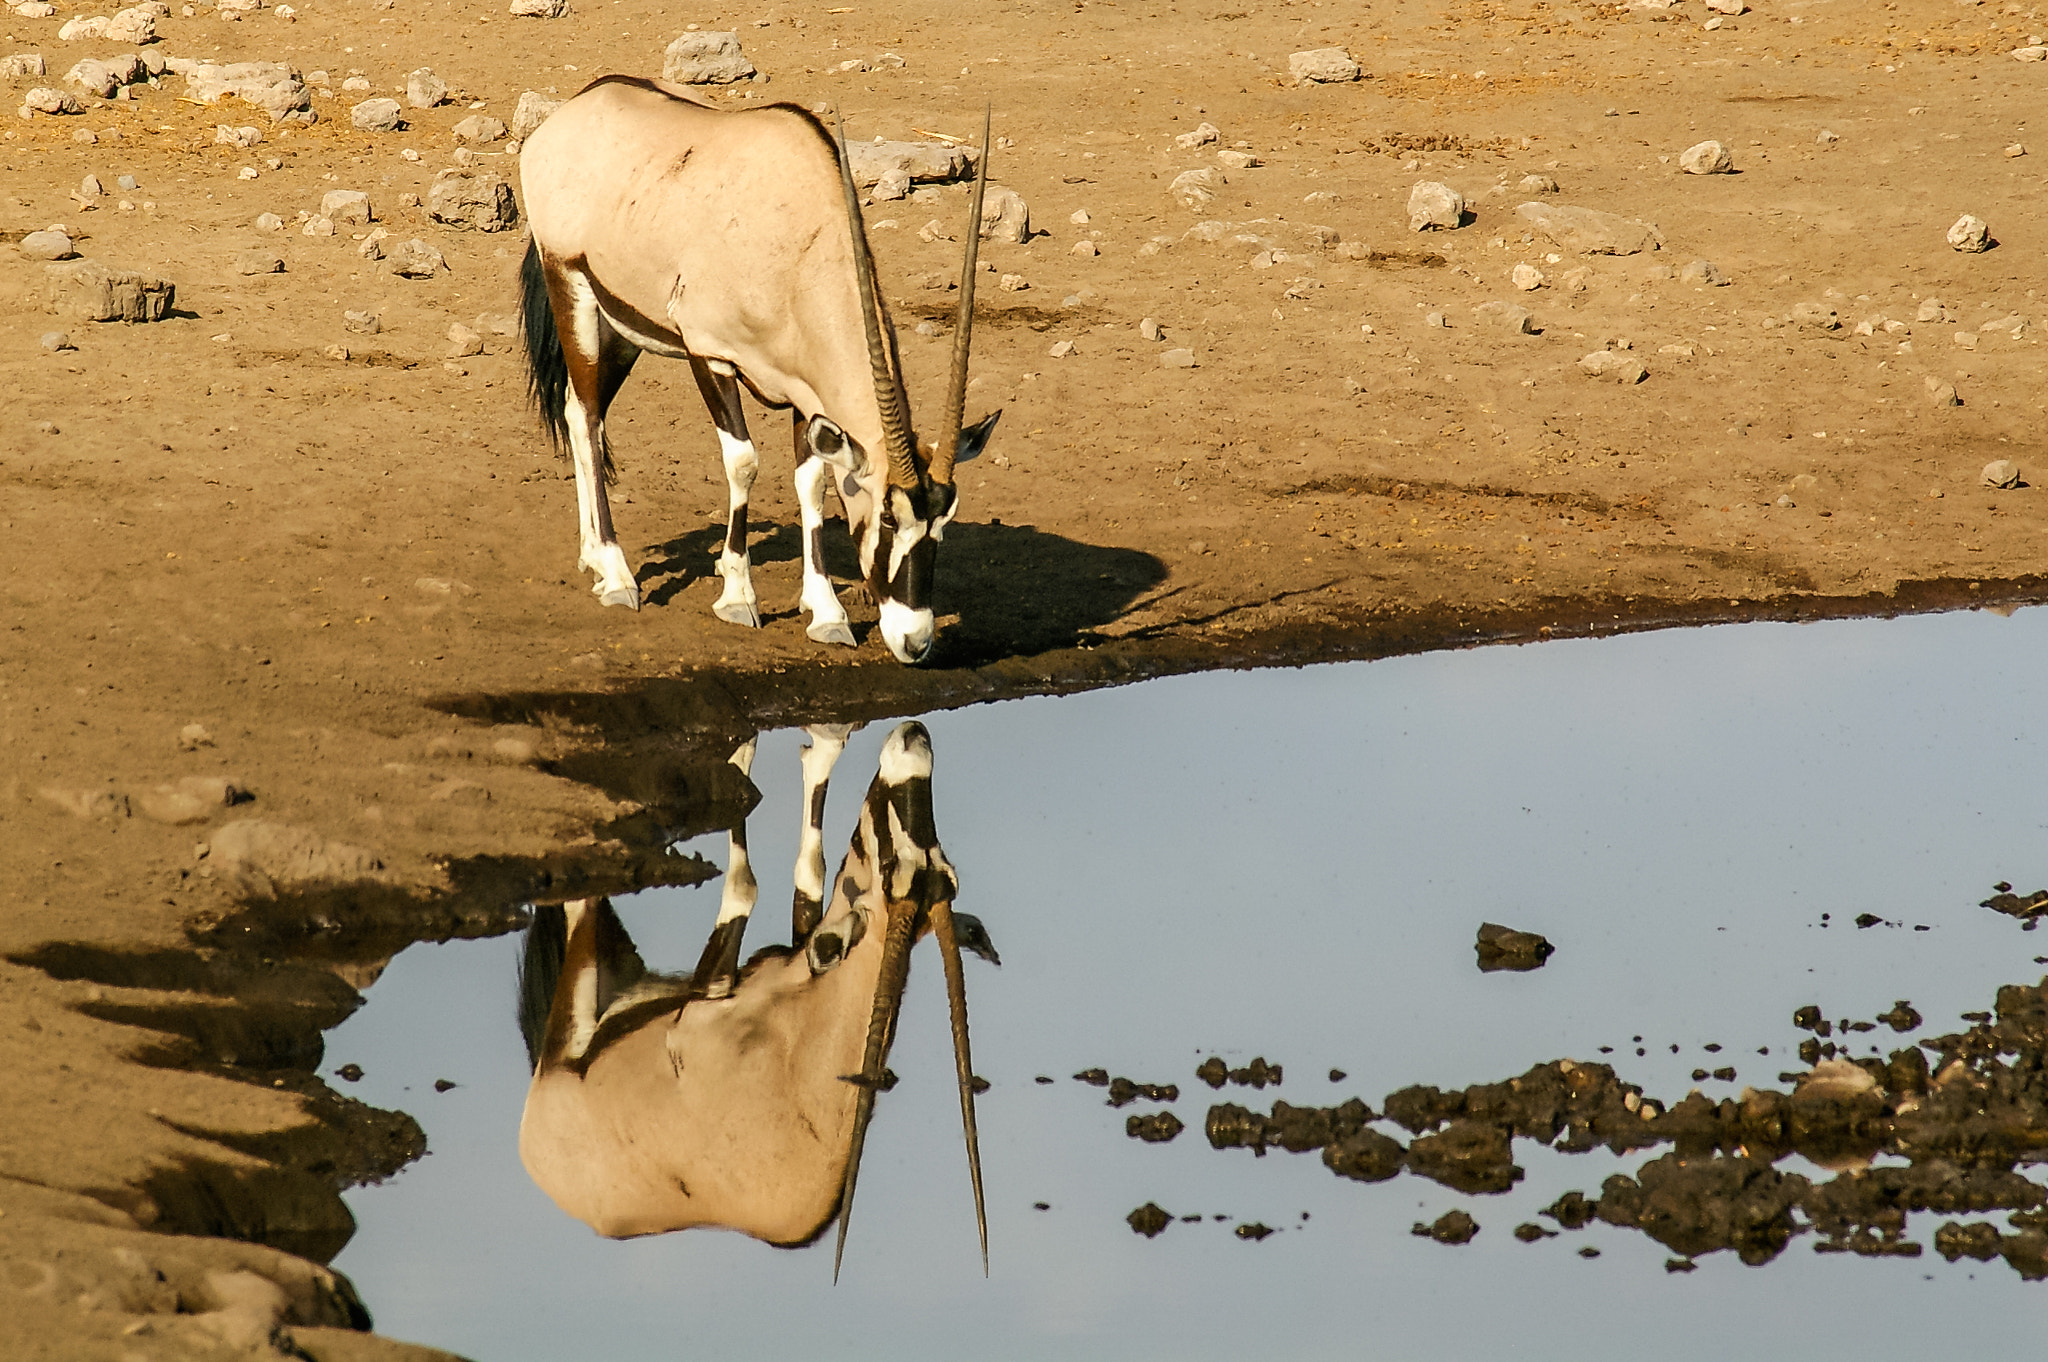 Pentax K100D sample photo. Drinking gemsbok (oryx) reflected in waterhole photography